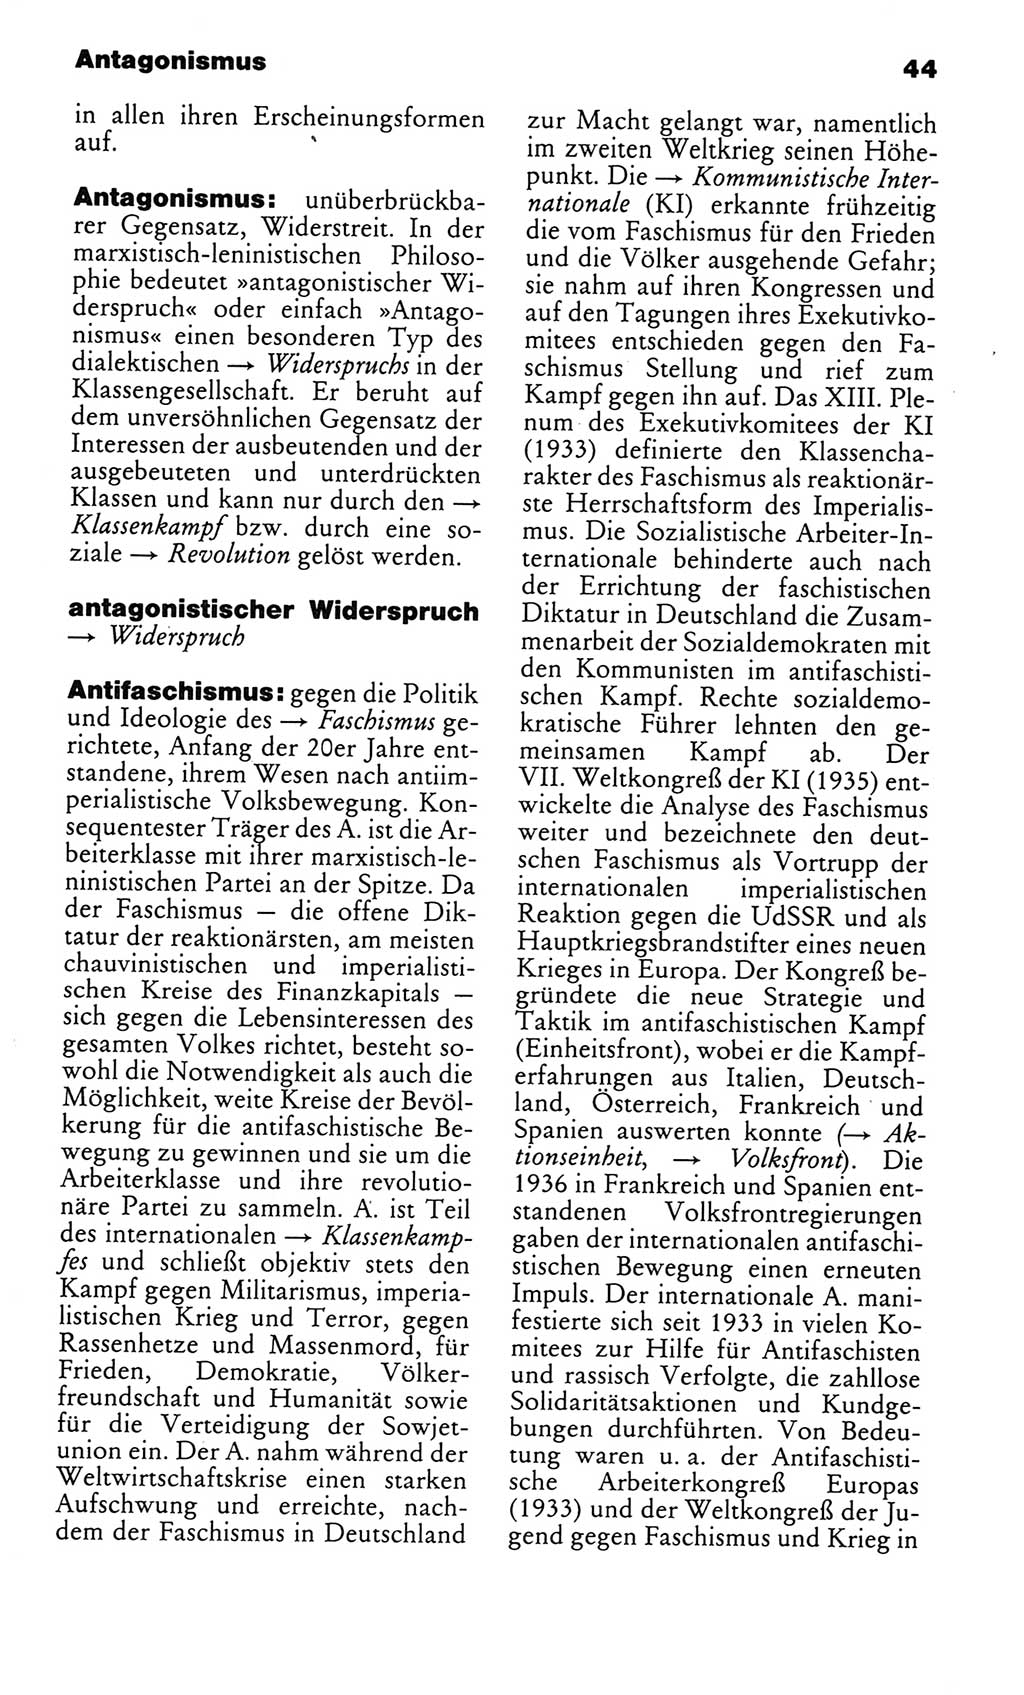 Kleines politisches Wörterbuch [Deutsche Demokratische Republik (DDR)] 1986, Seite 44 (Kl. pol. Wb. DDR 1986, S. 44)